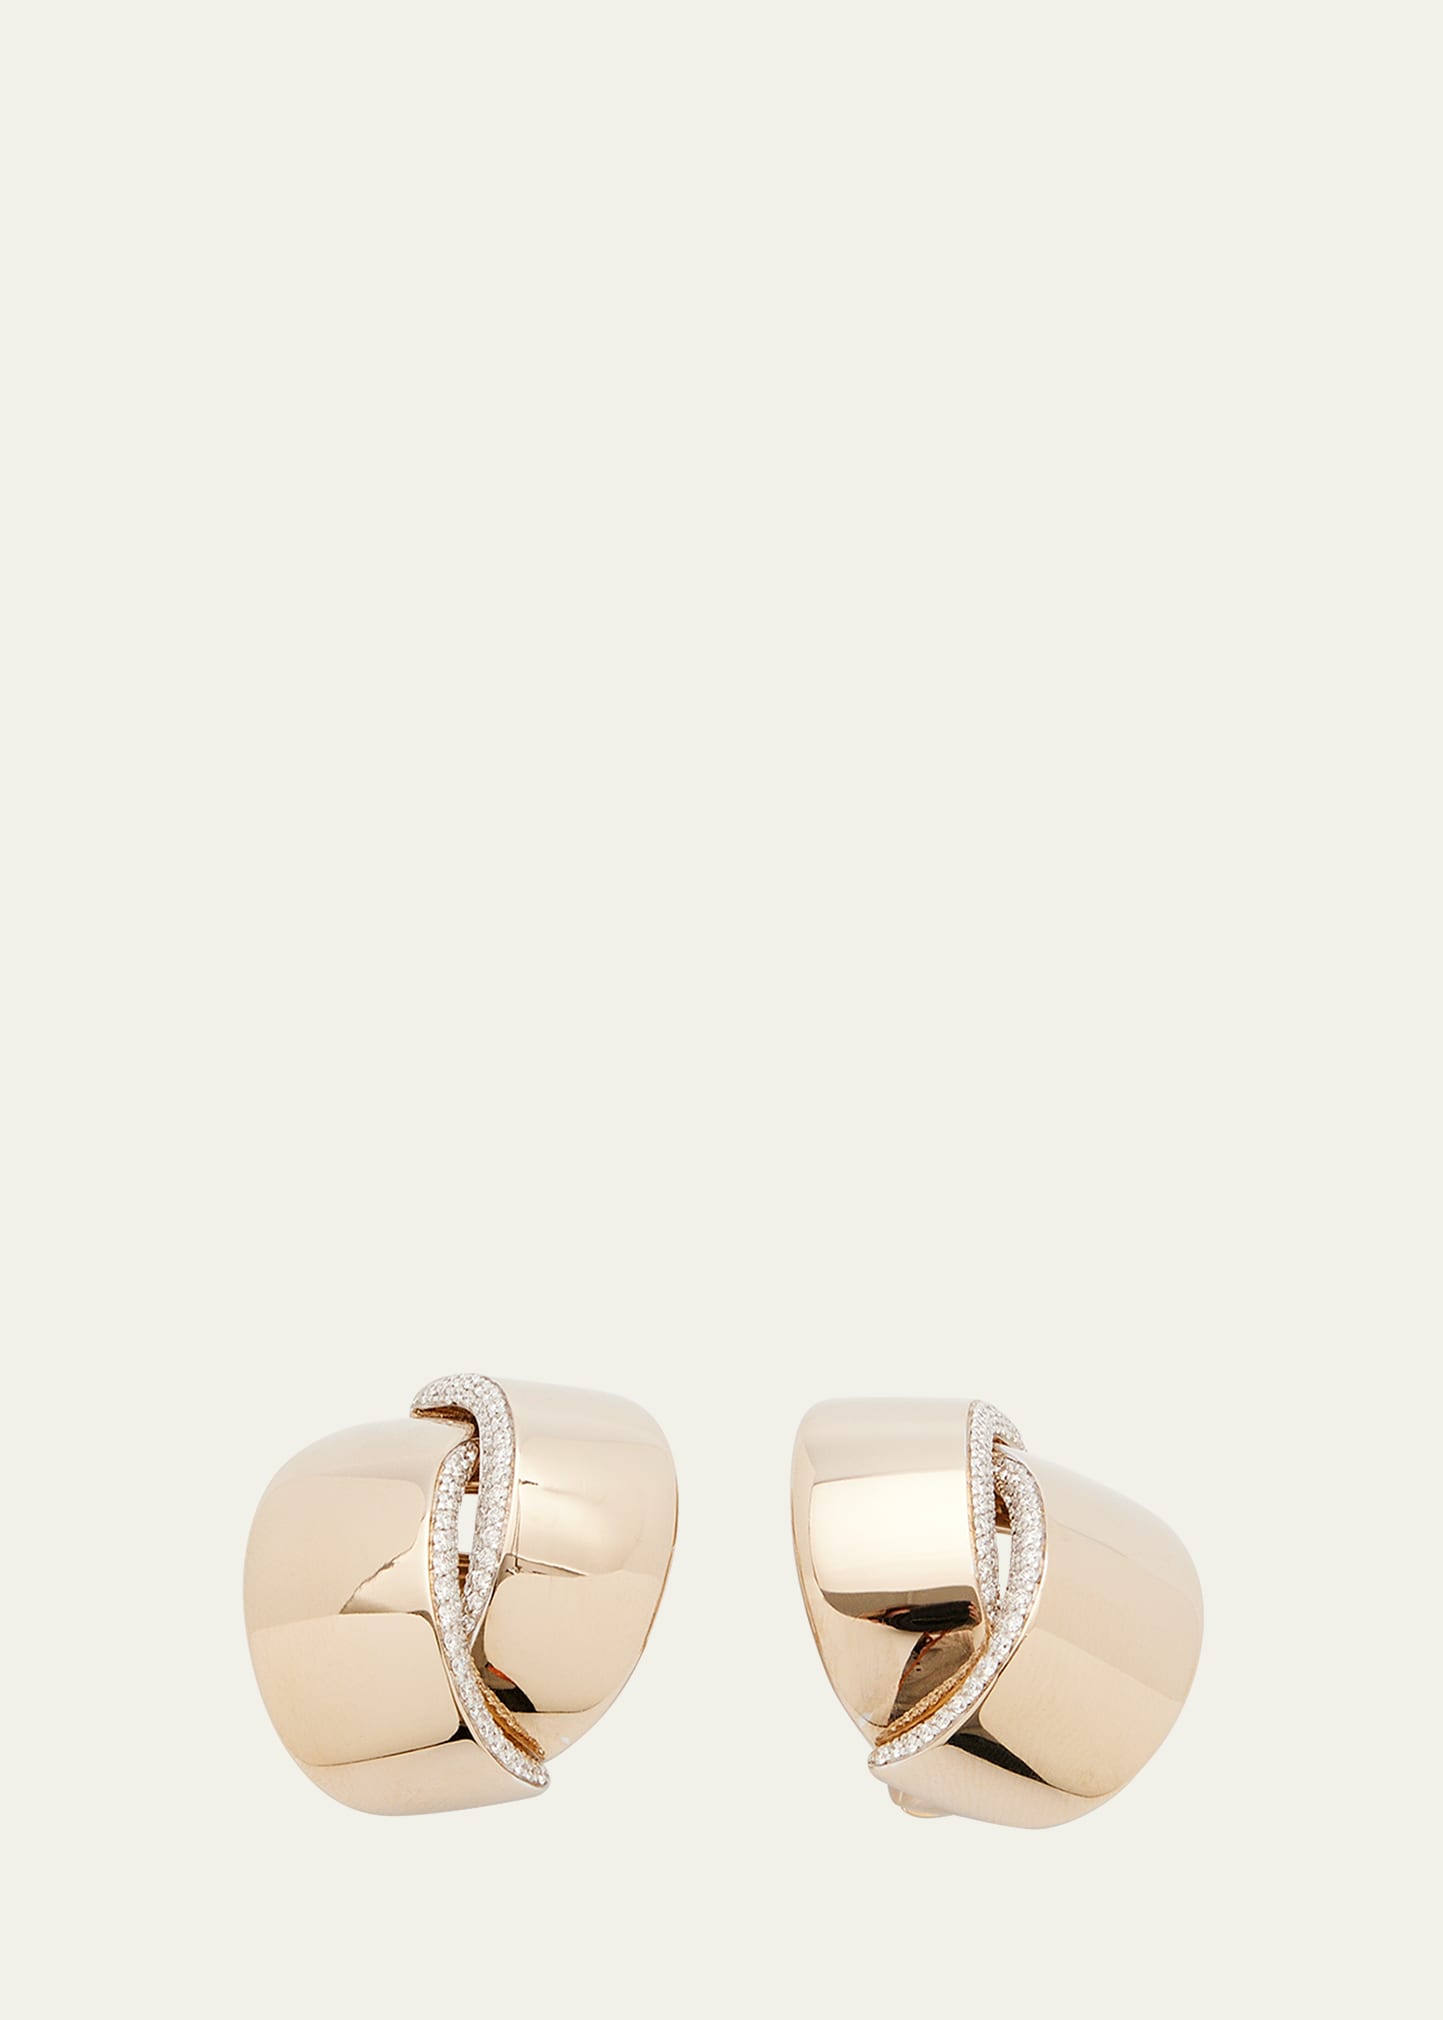 VHERNIER Earrings for Women | ModeSens